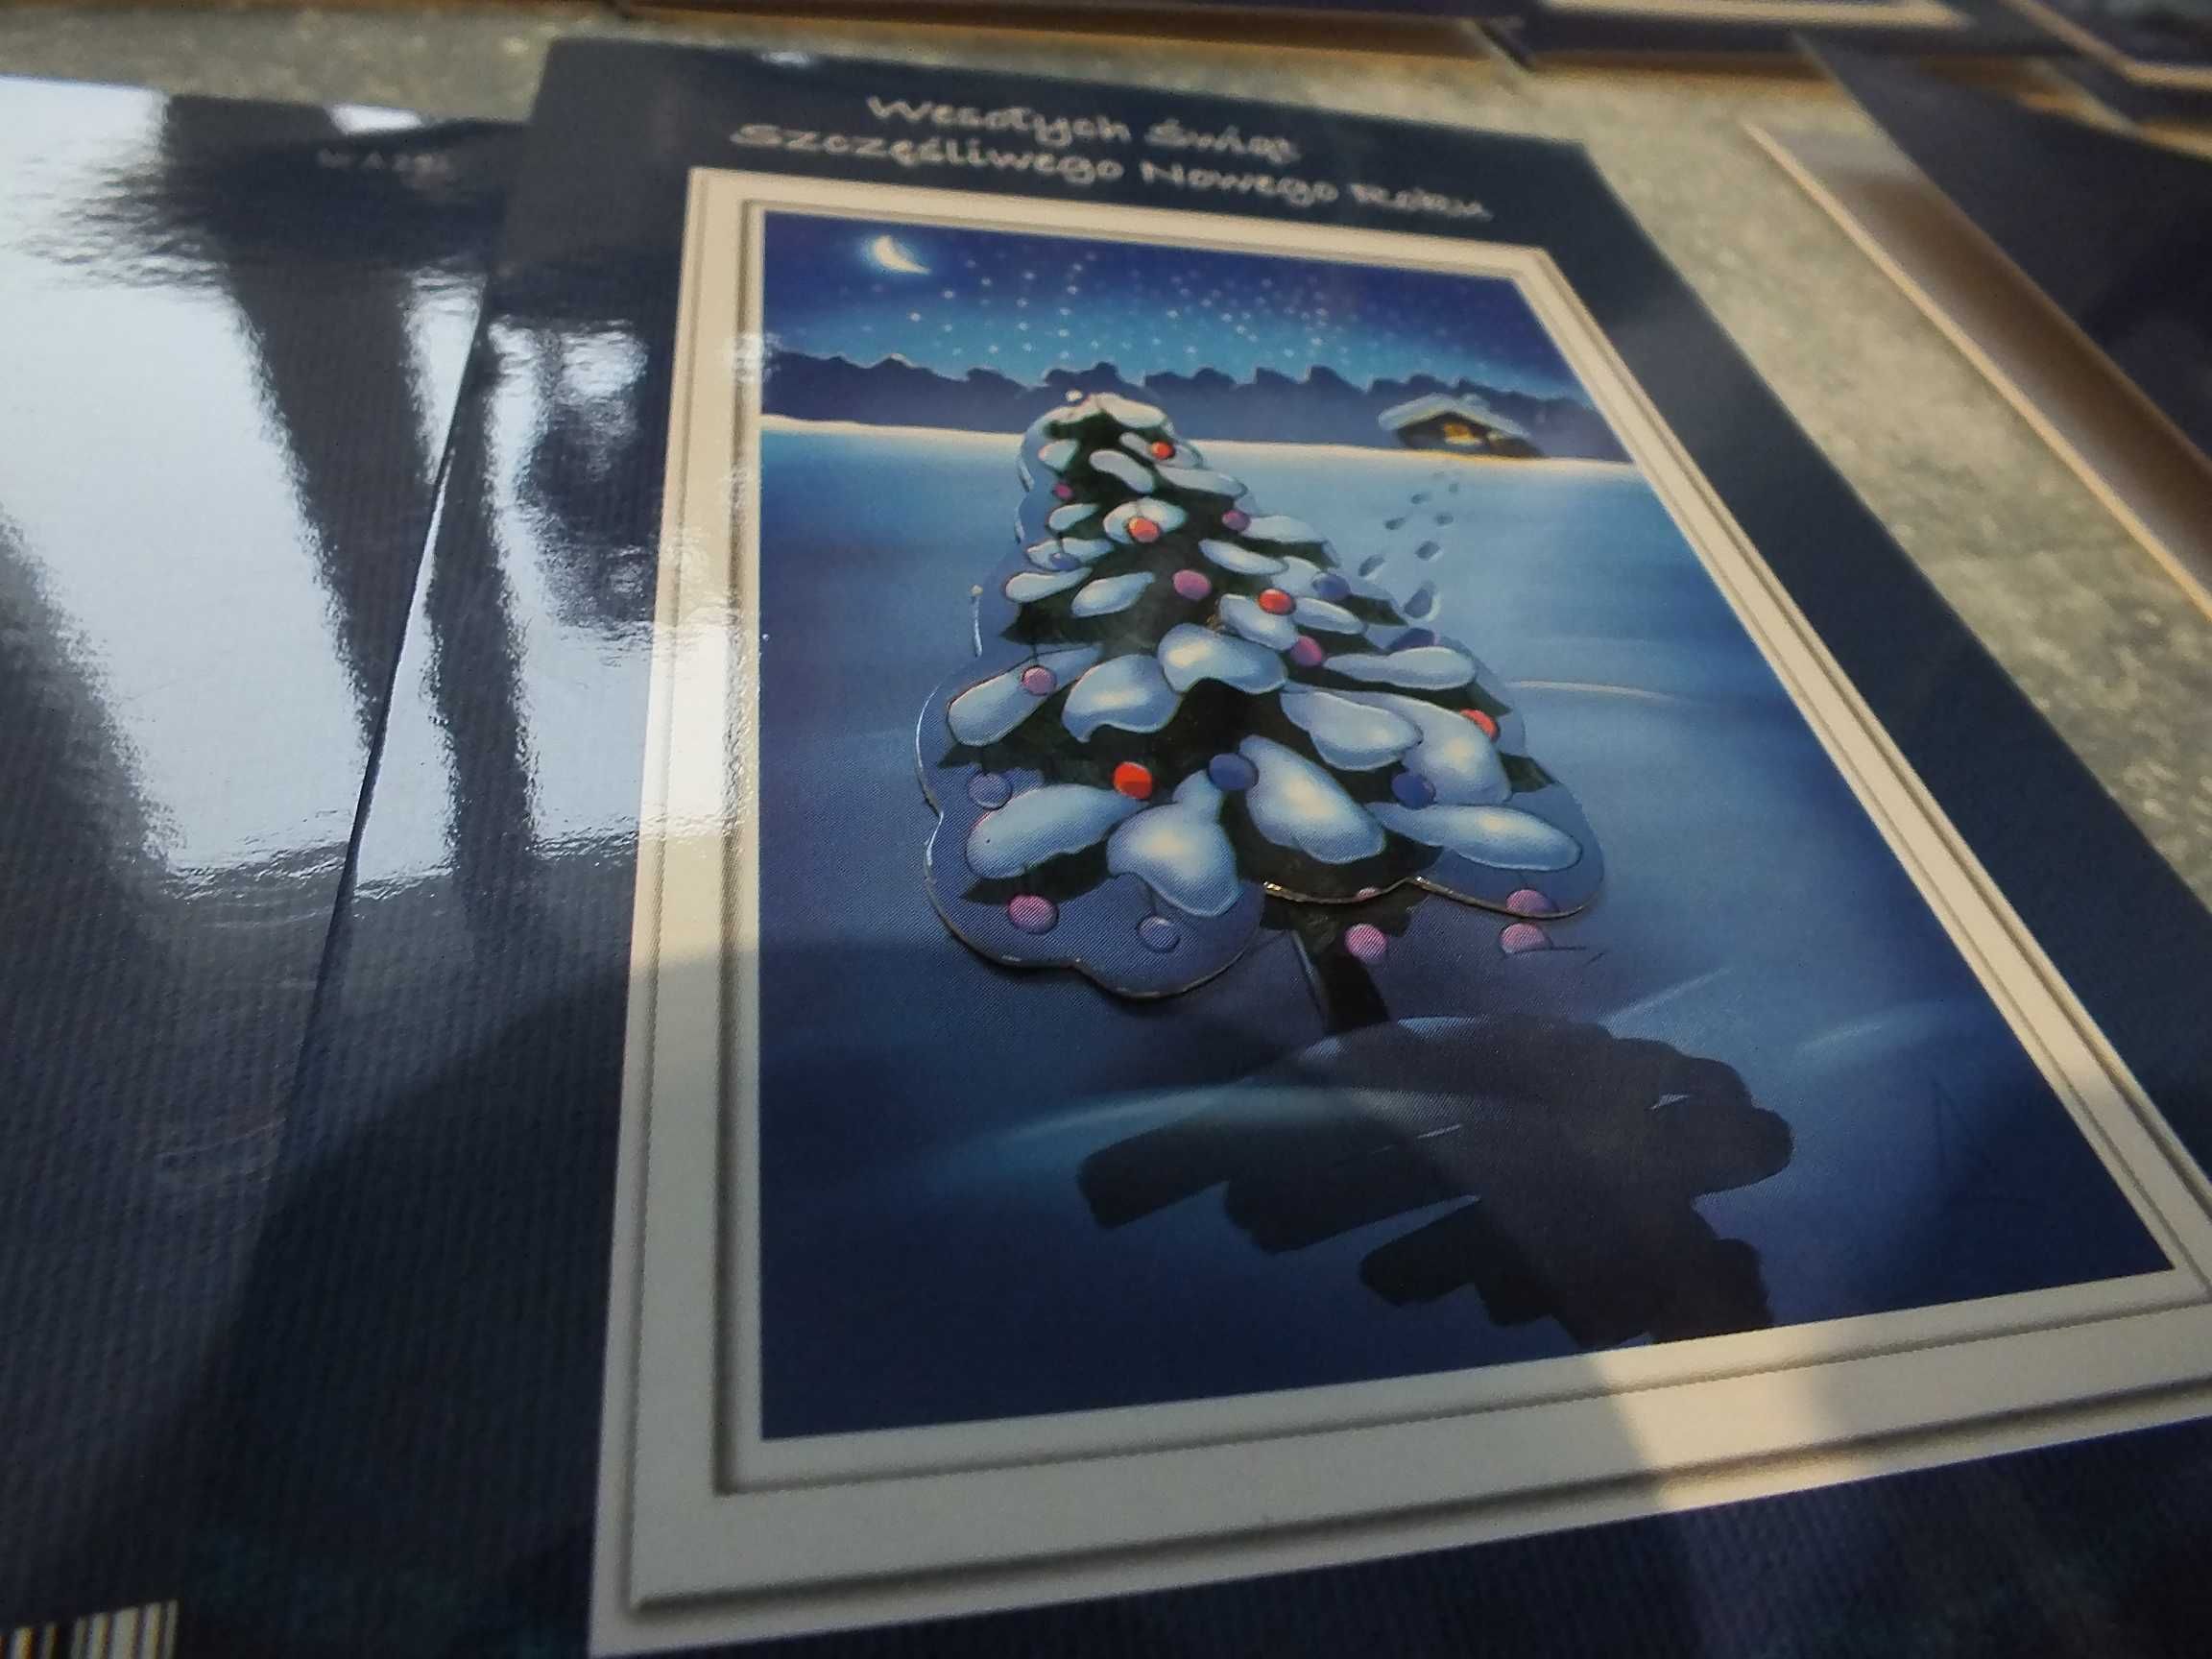 14szt. kartki pocztowe świąteczne Boże Narodzenie pocztówki NOWE 3D